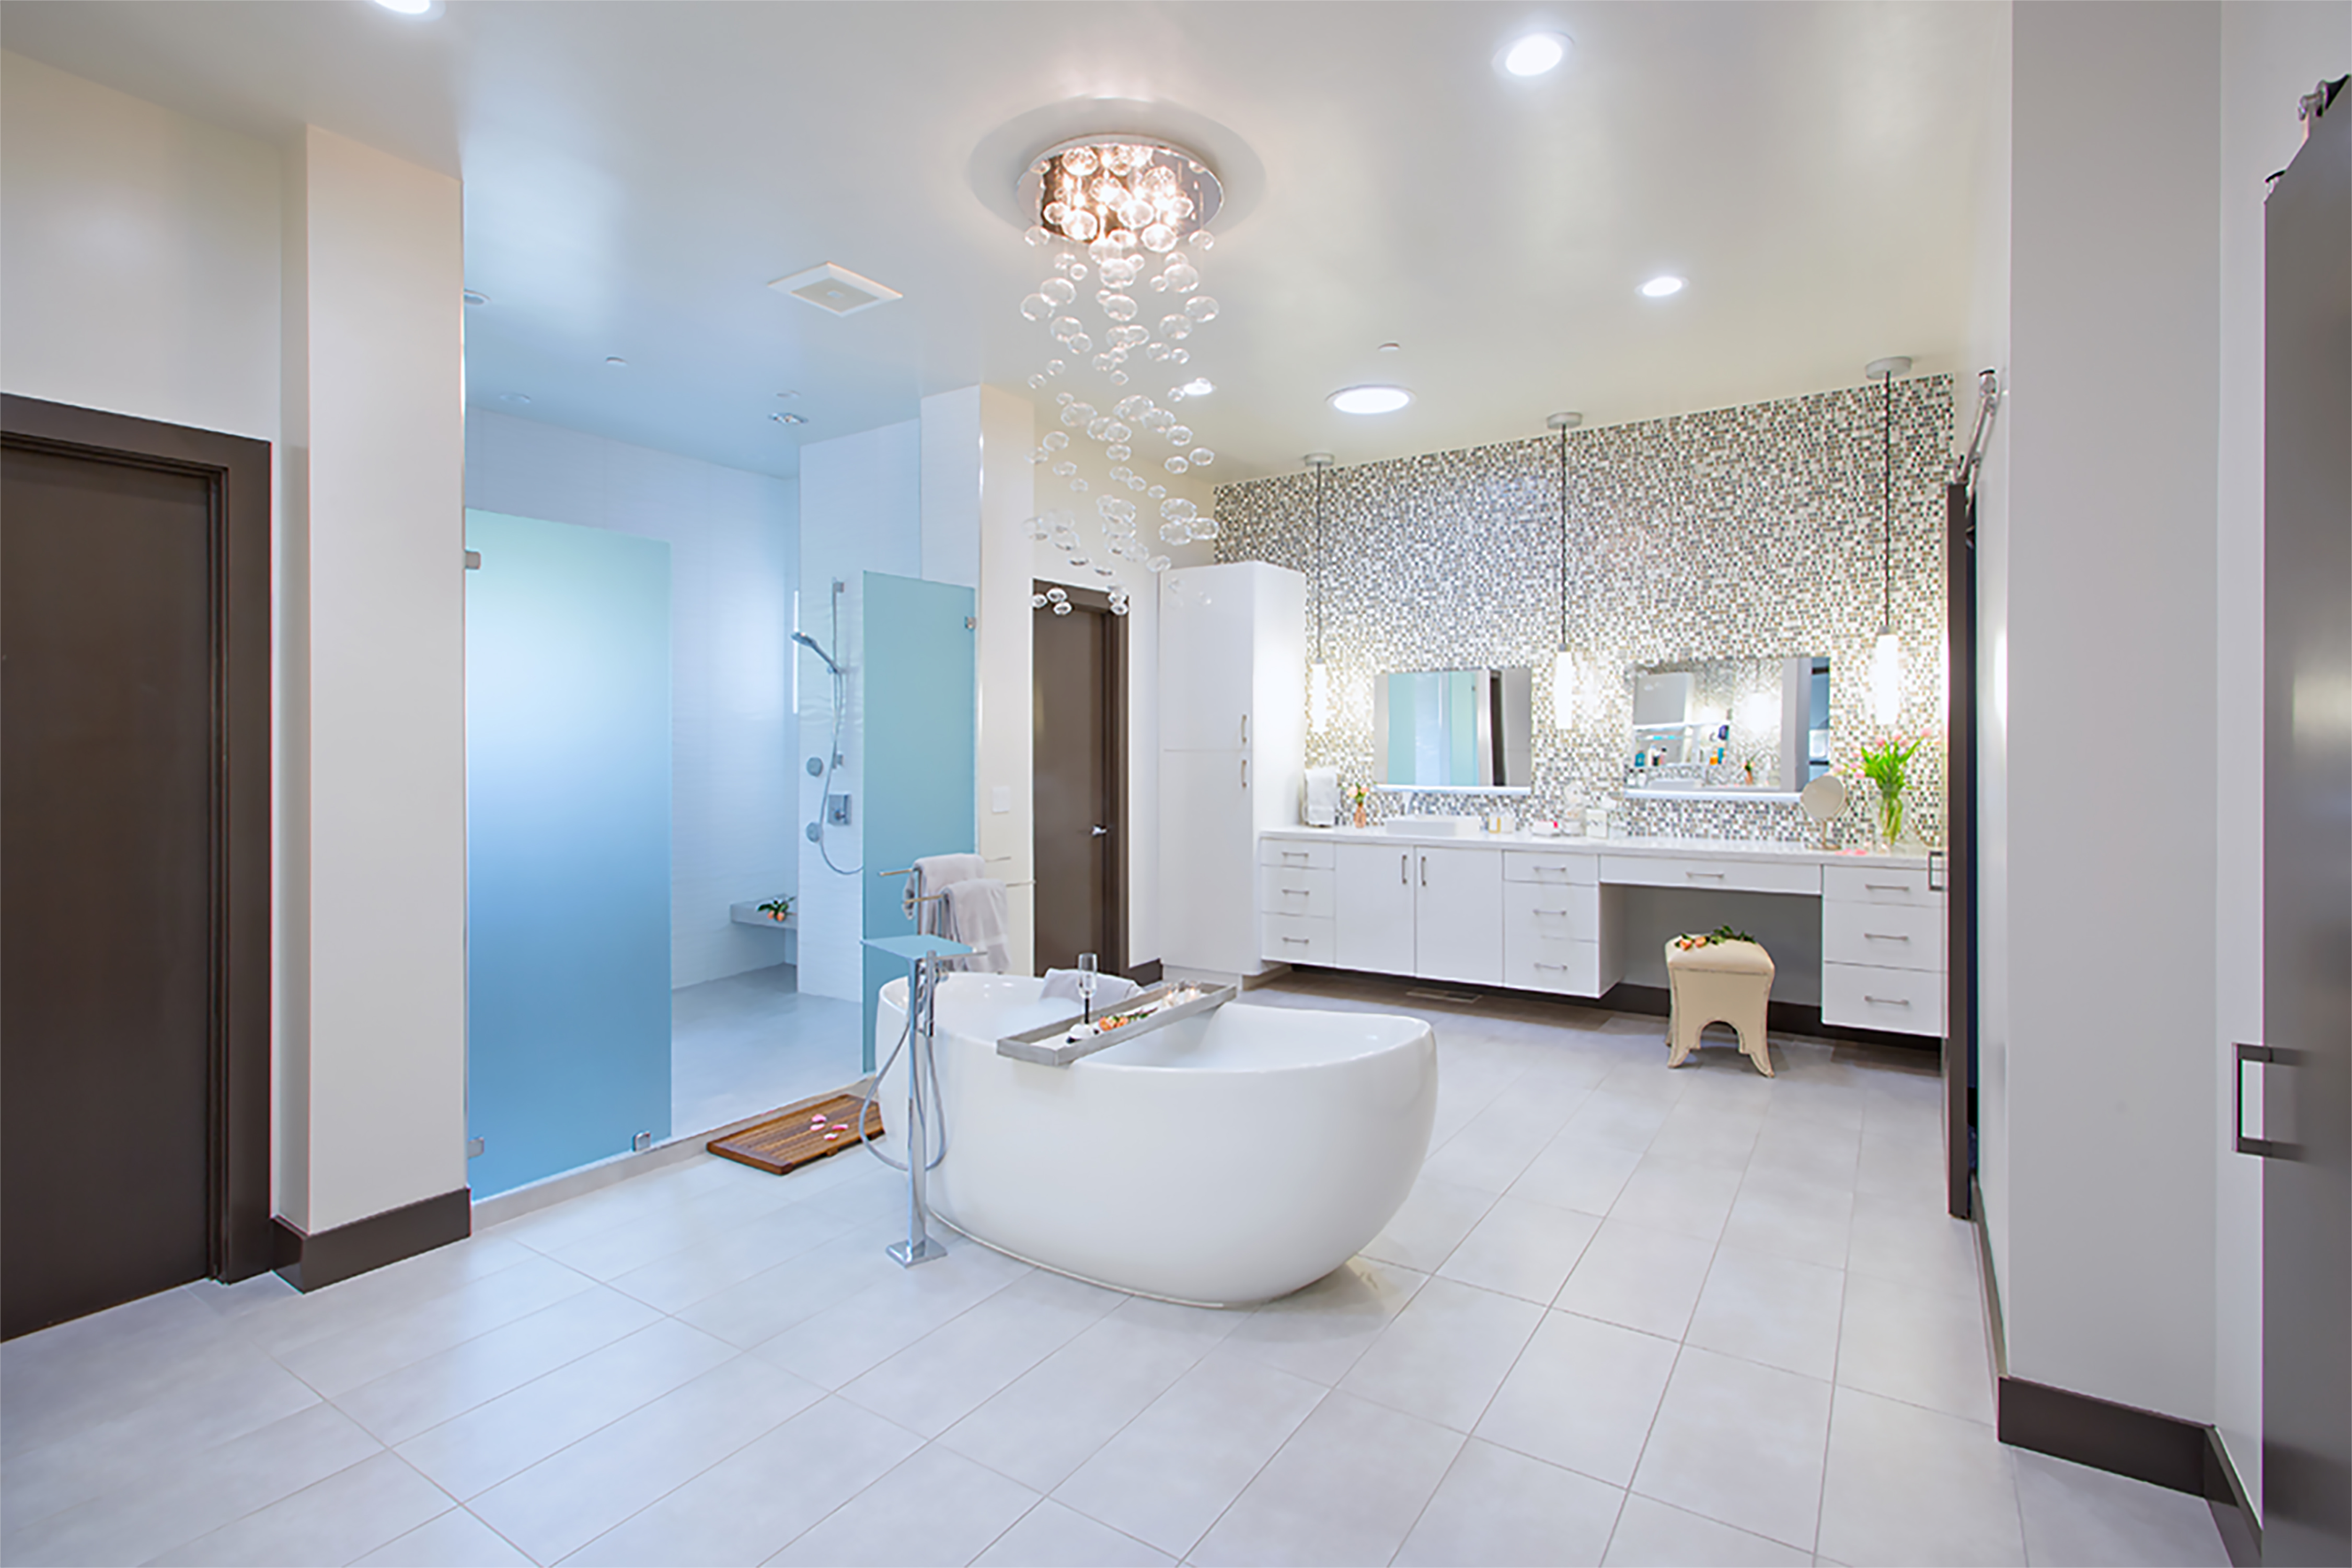 Winner Best Residential Bathroom Design